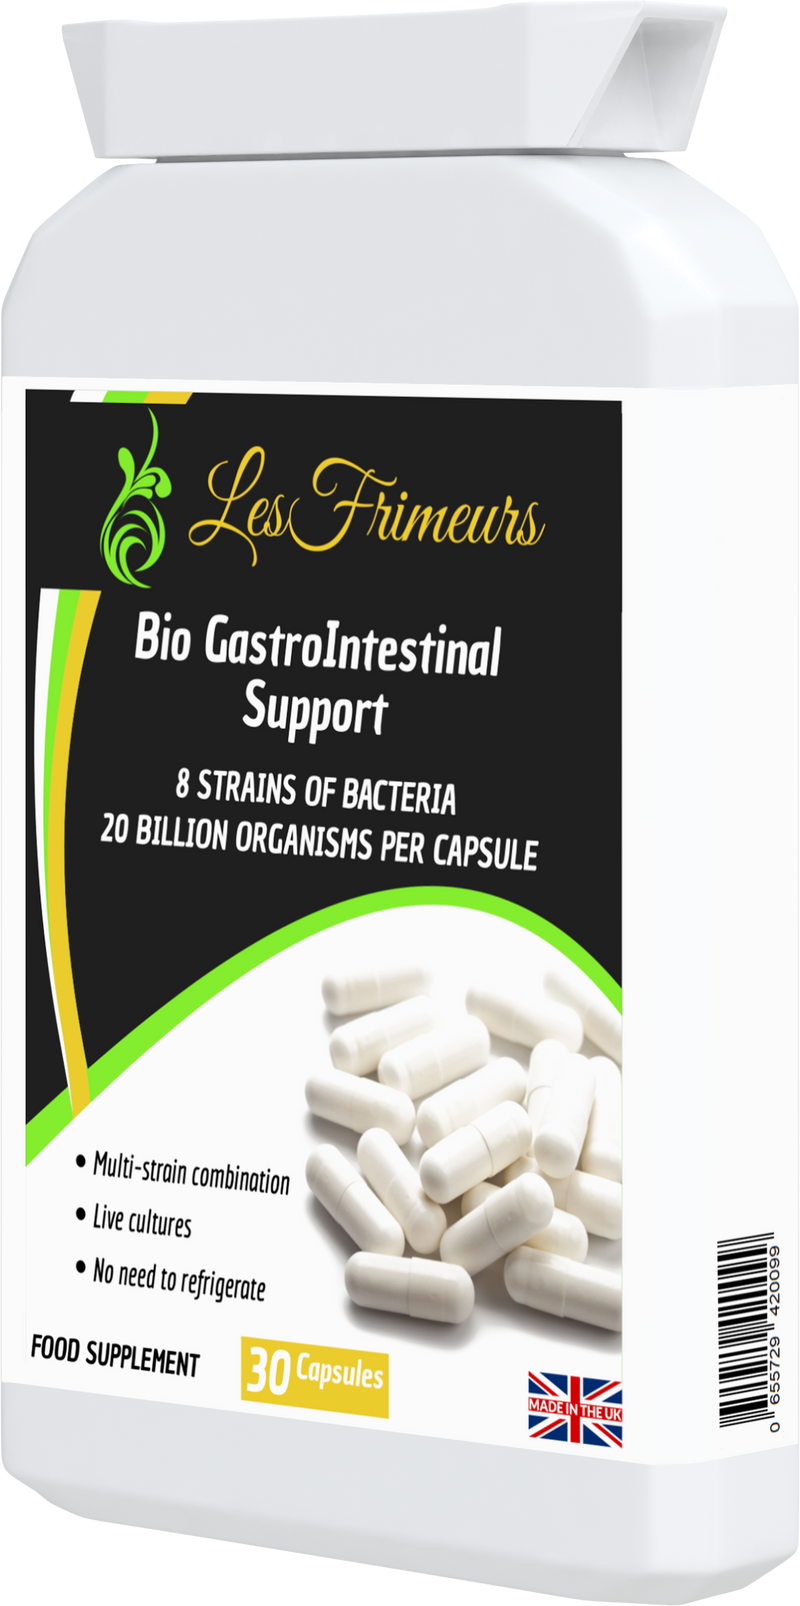 Bio GastroIntestinal Support